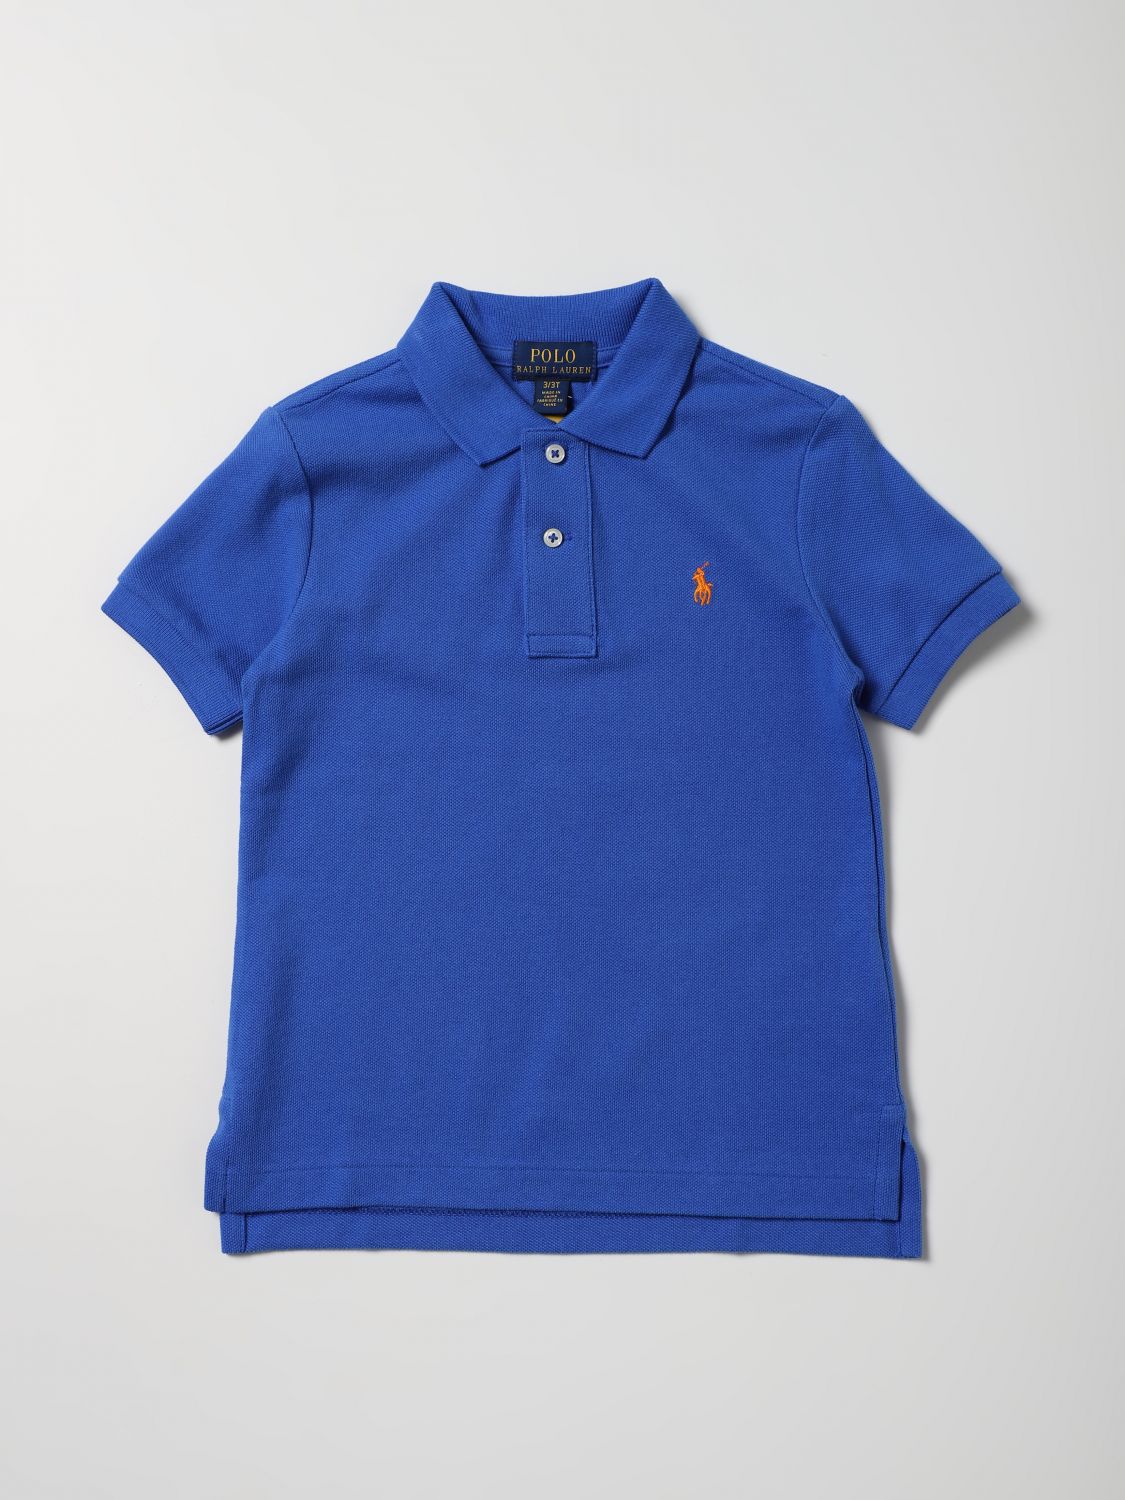 POLO RALPH LAUREN: polo shirt for boys - Blue | Polo Ralph Lauren polo ...